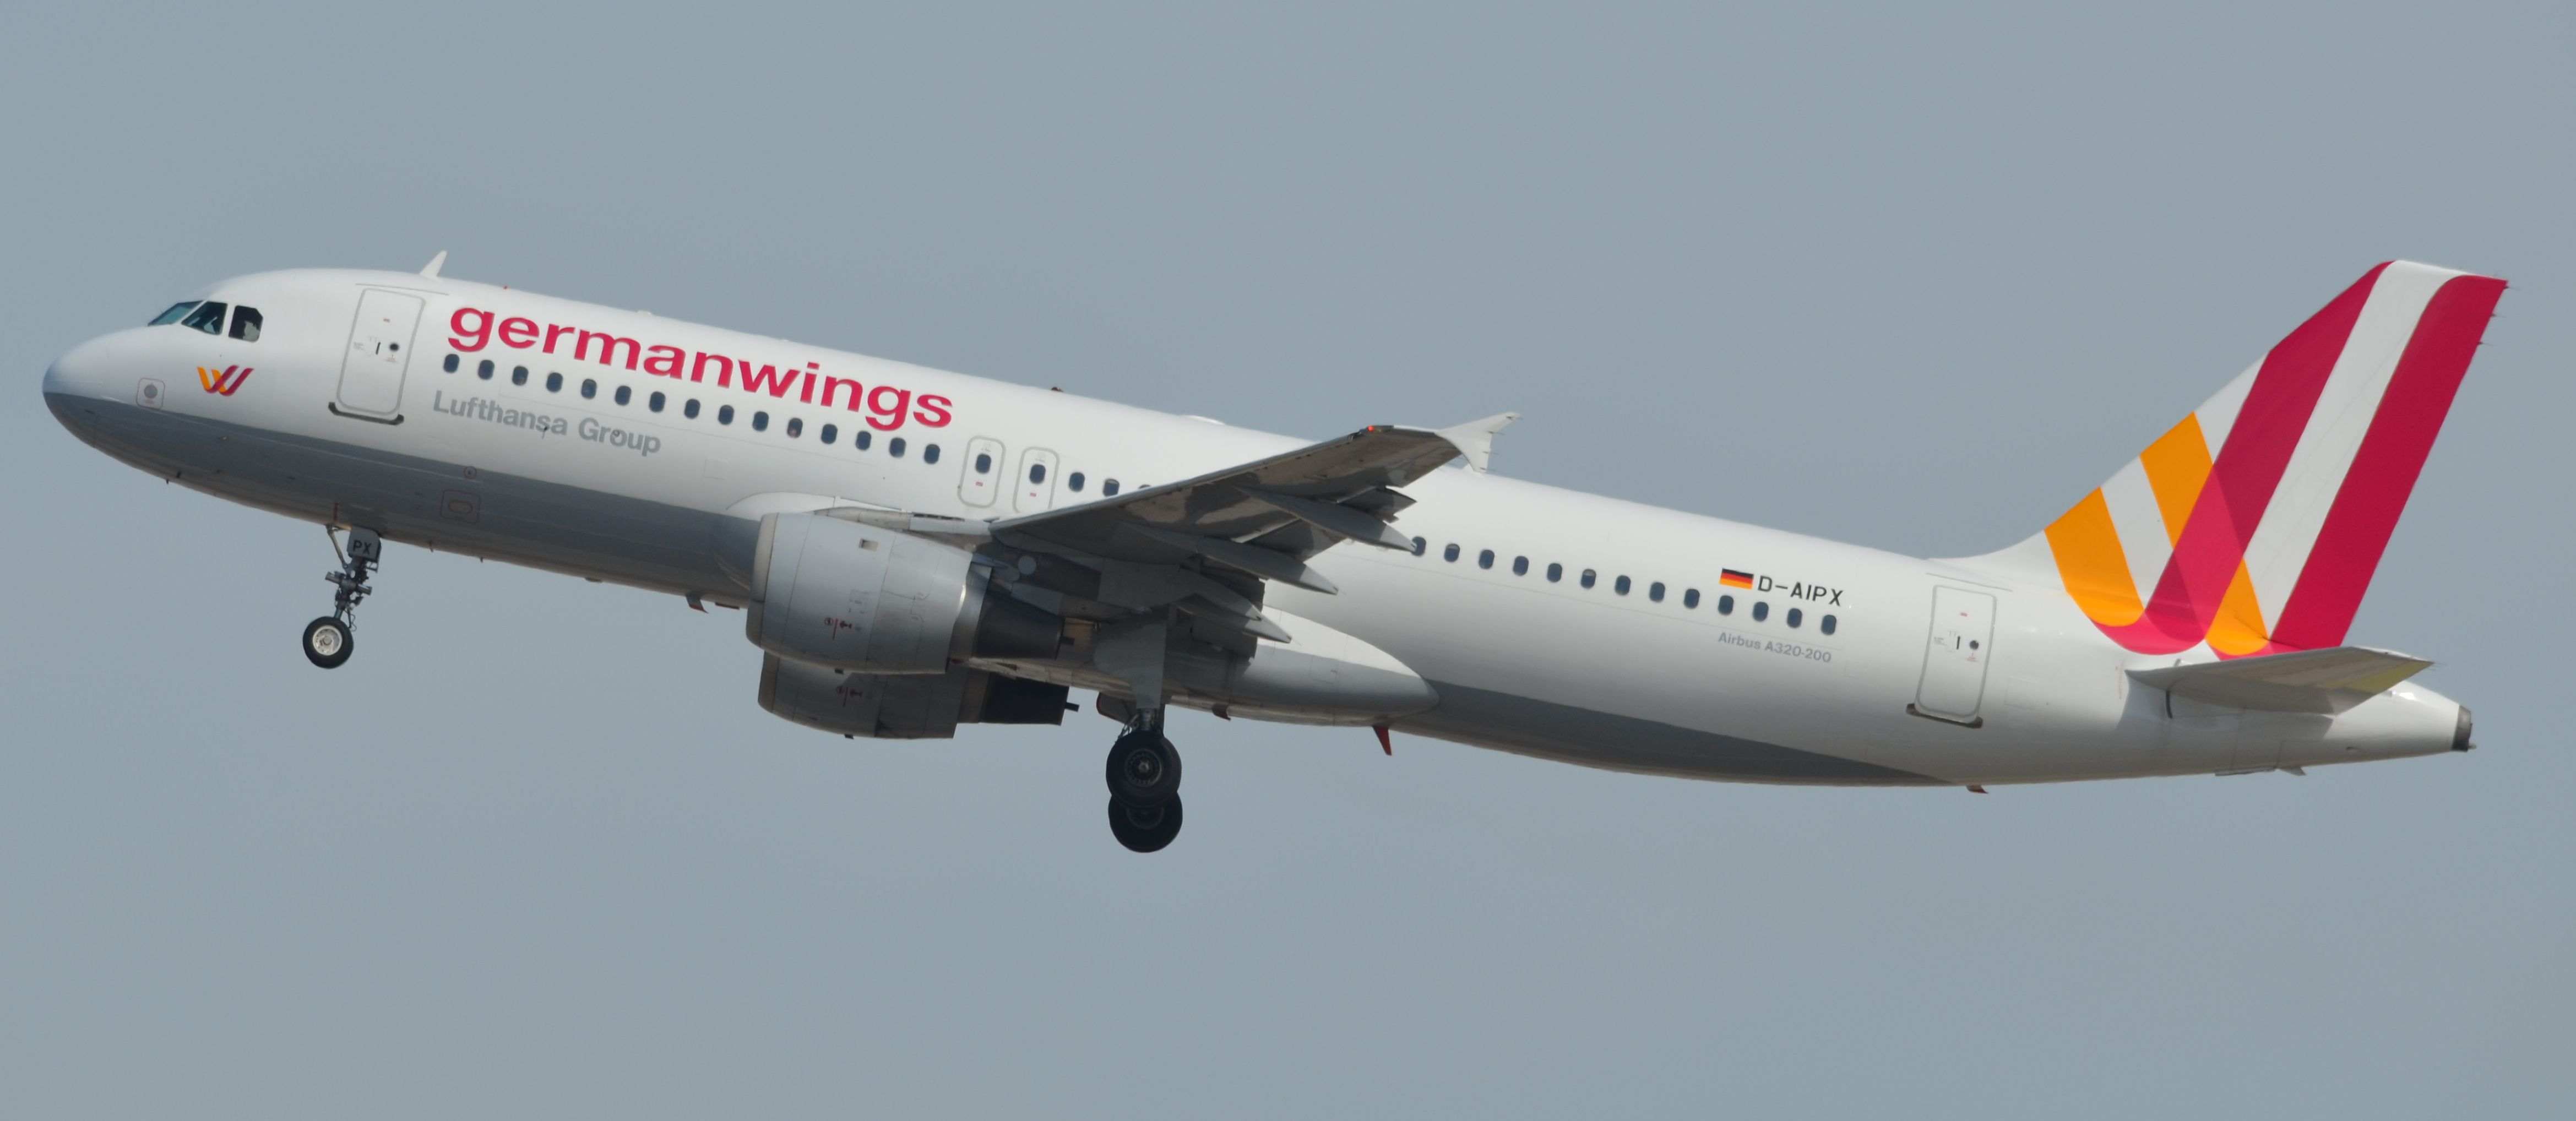 ¿Cómo evitar un accidente como el de Germanwings?